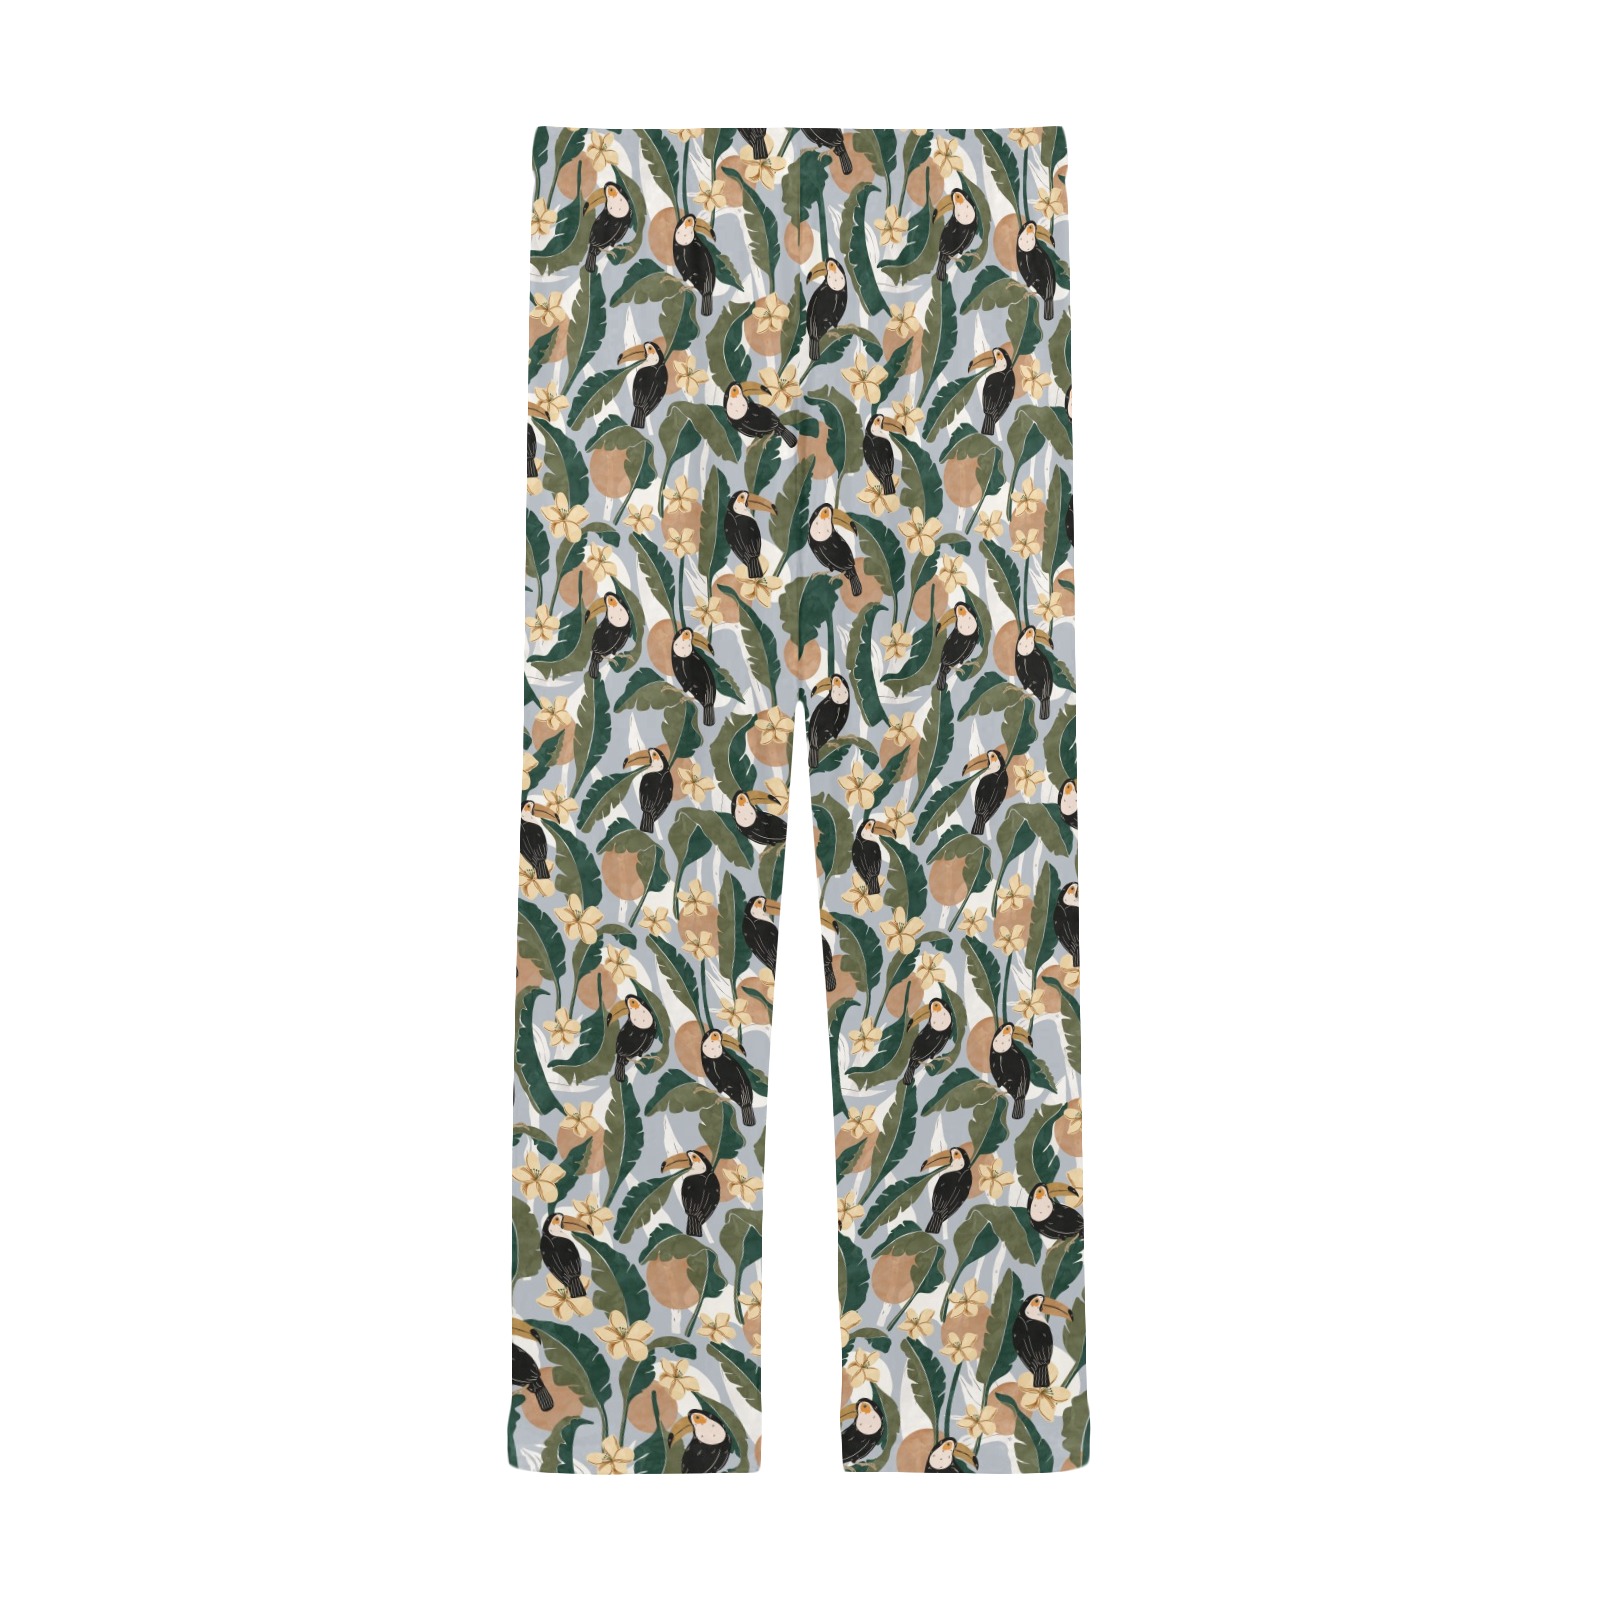 Tucans banana leaf-007 Men's Pajama Trousers